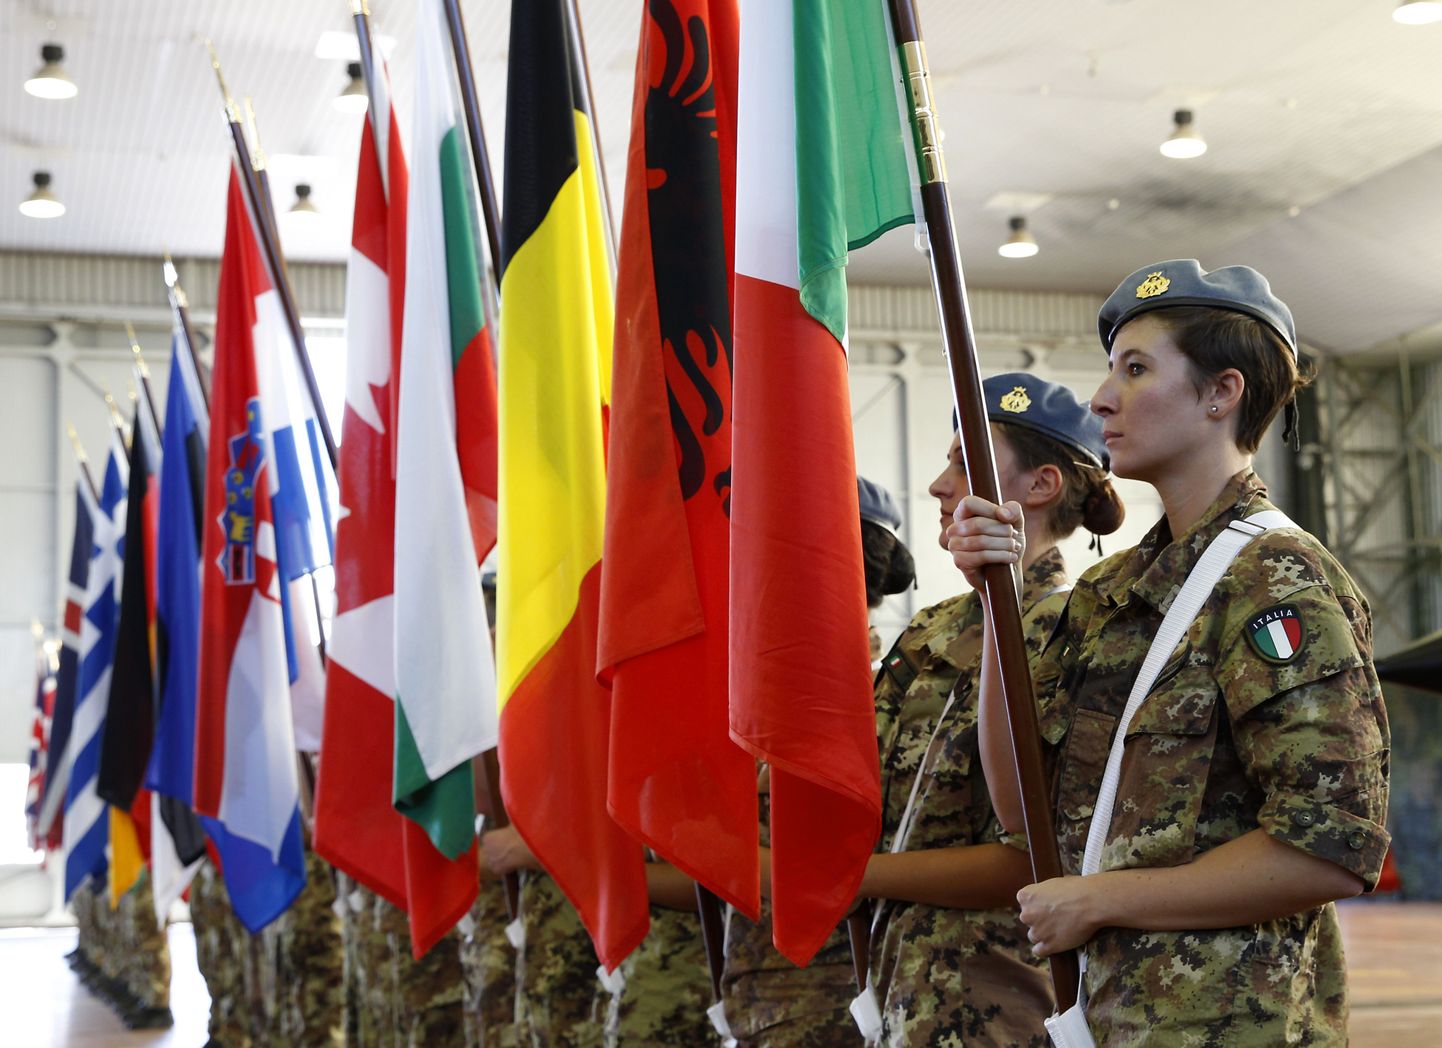 Солдаты с флагами стран НАТО в руках на церемонии открытия военных маневров в Италии 19 октября.